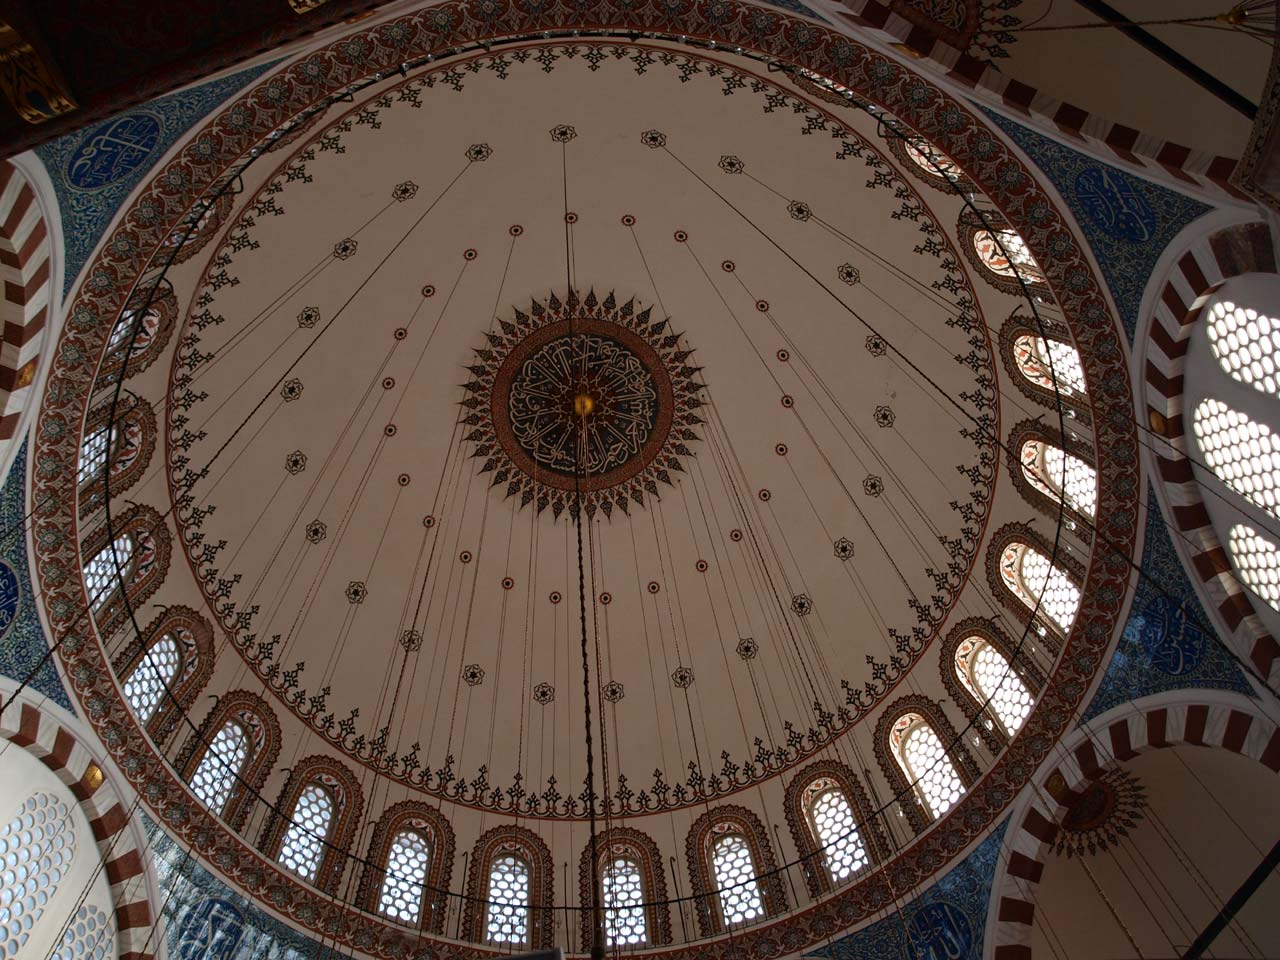  Desain interior kubah masjid konsep kaligrafi 